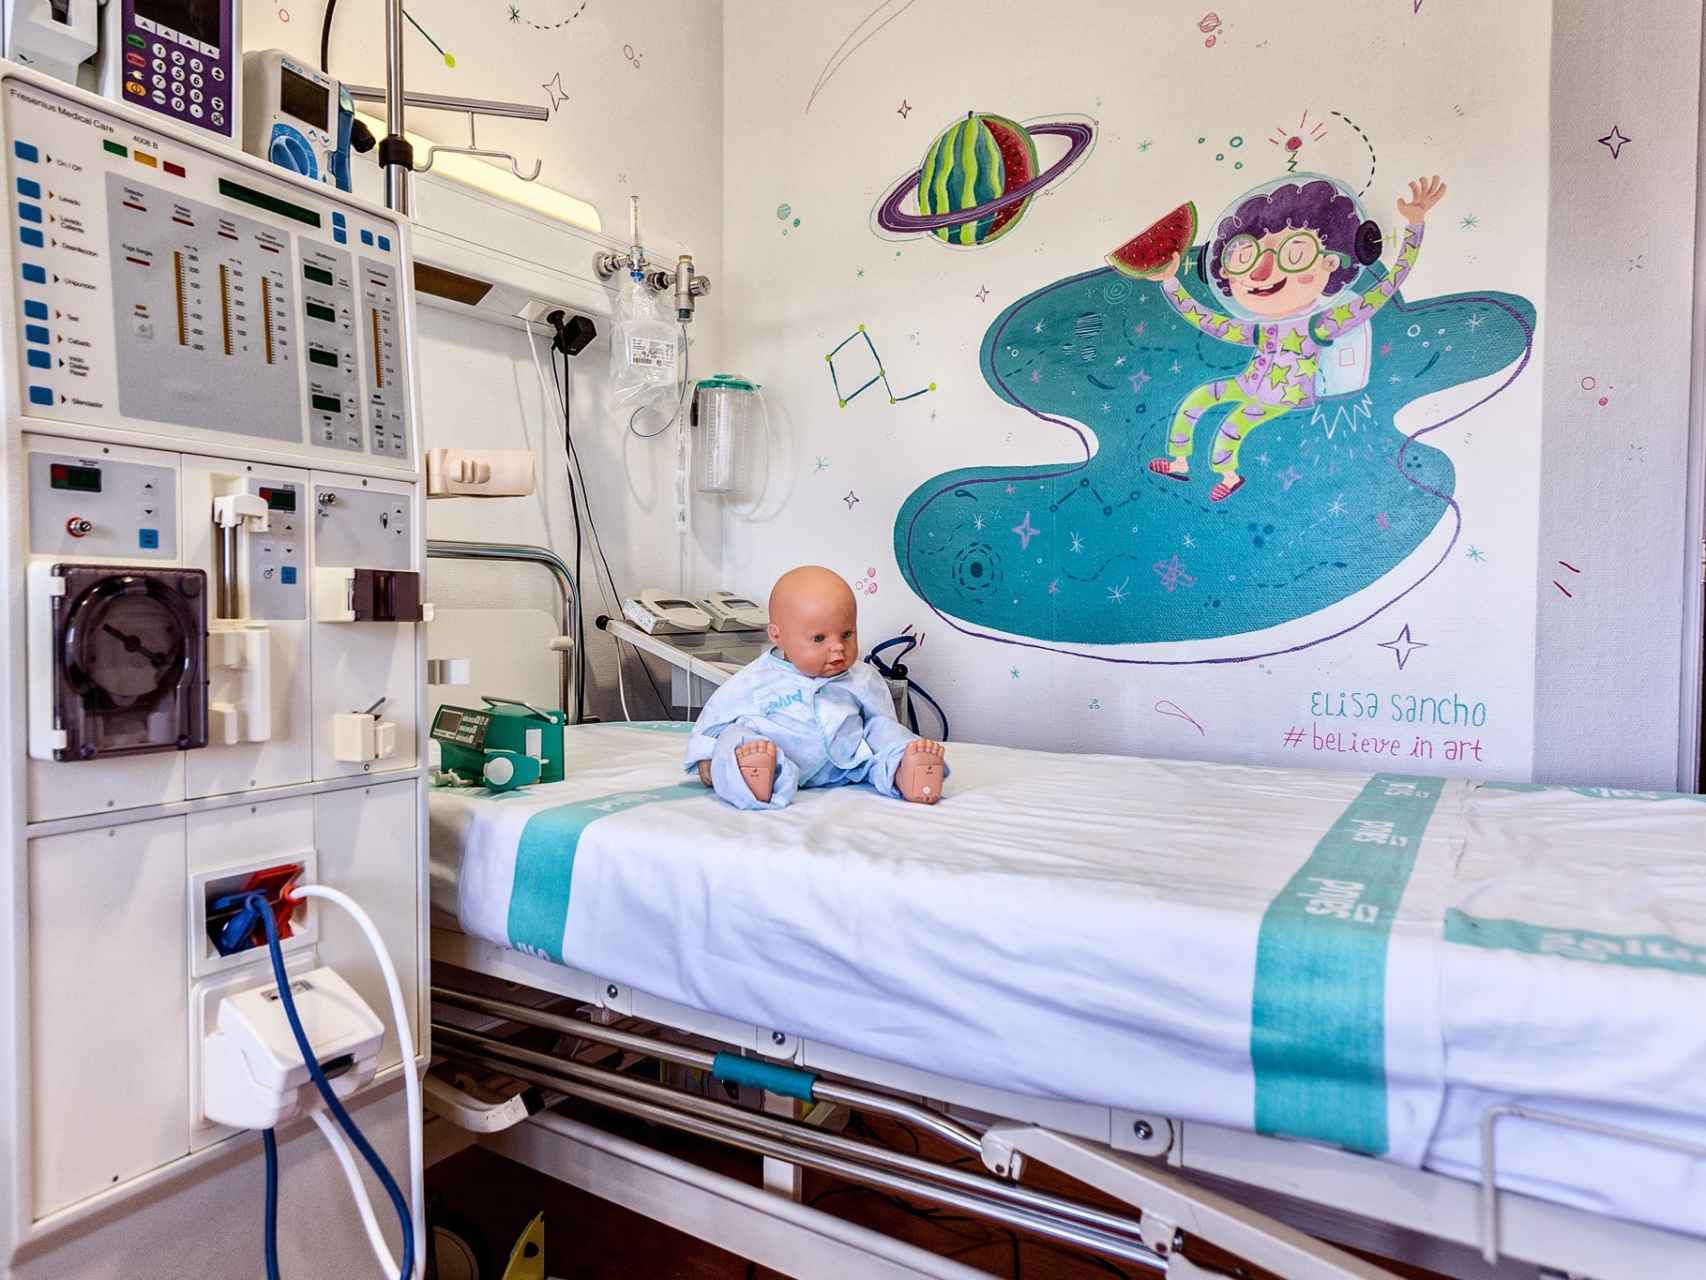 Los pintores e ilustradores repiten y hacen varias habitaciones del hospital.